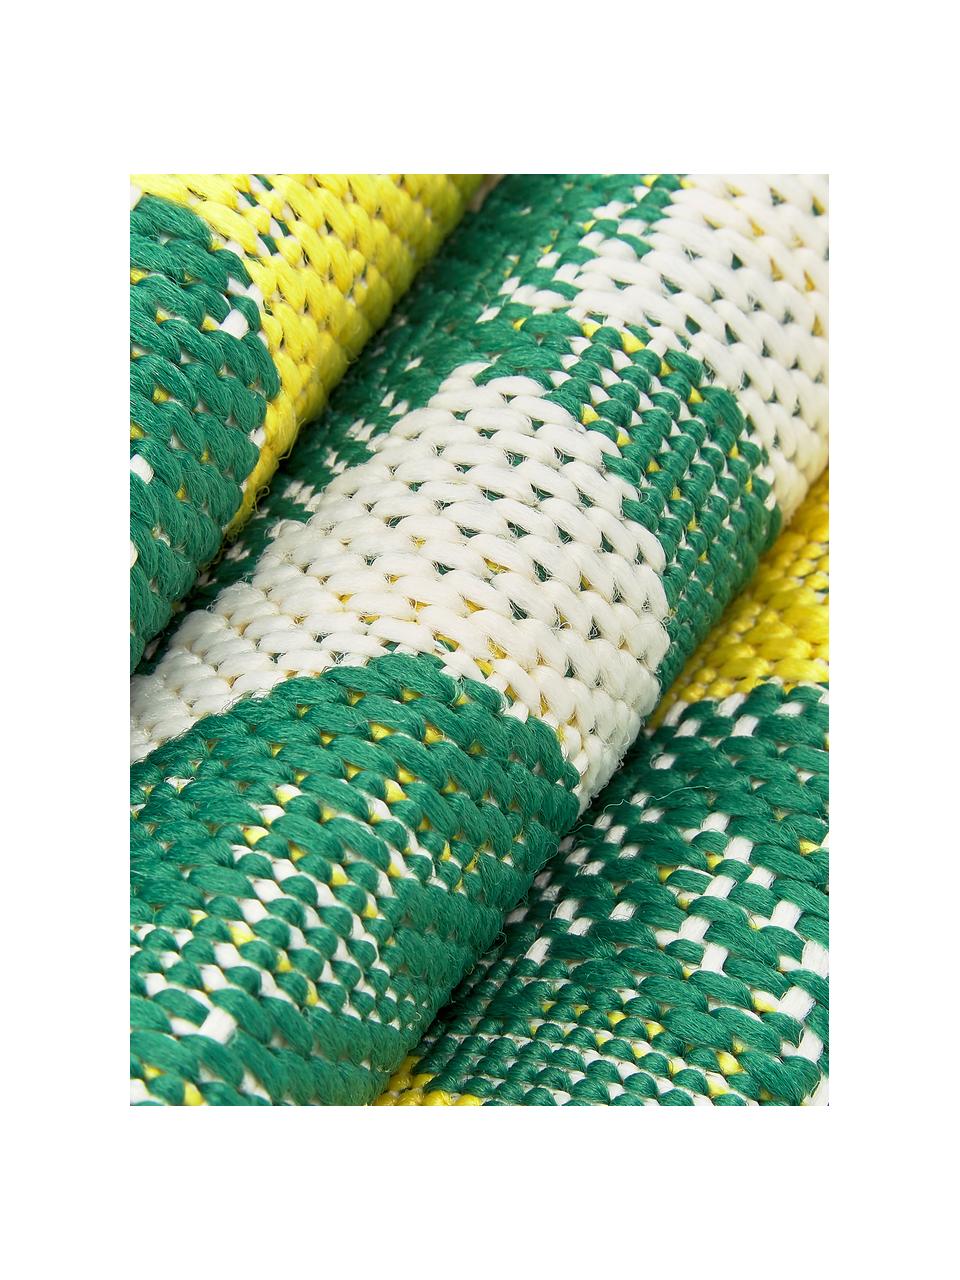 In- & Outdoor-Teppich Limonia mit Zitronen Print, 86% Polypropylen, 14% Polyester, Cremeweiß, Gelb, Grün, B 160 x L 230 cm (Größe M)